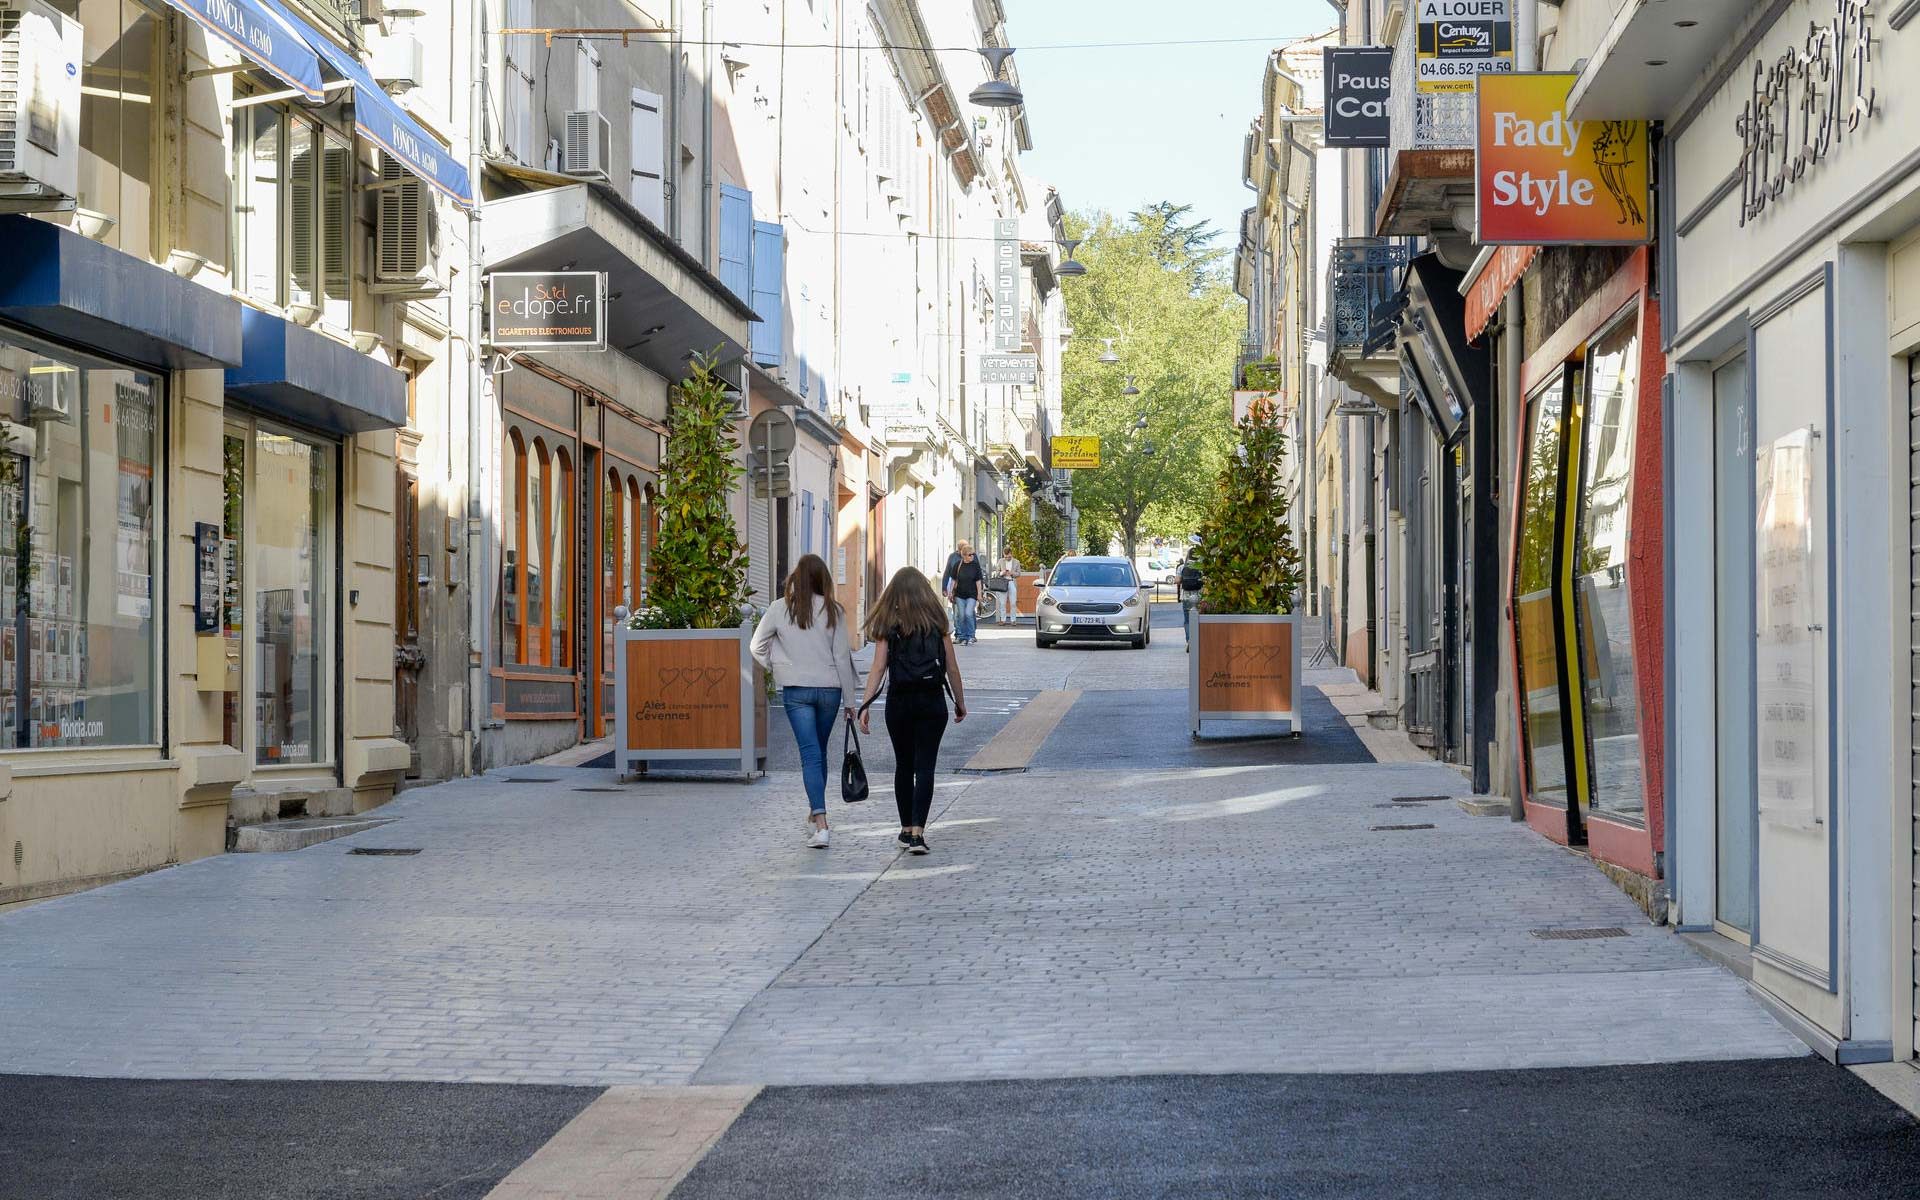 La rue Taisson est transformée en “espace partagé” depuis le 24 avril. Les piétons n’hésitent pas à emprunter toute la largeur de la rue.